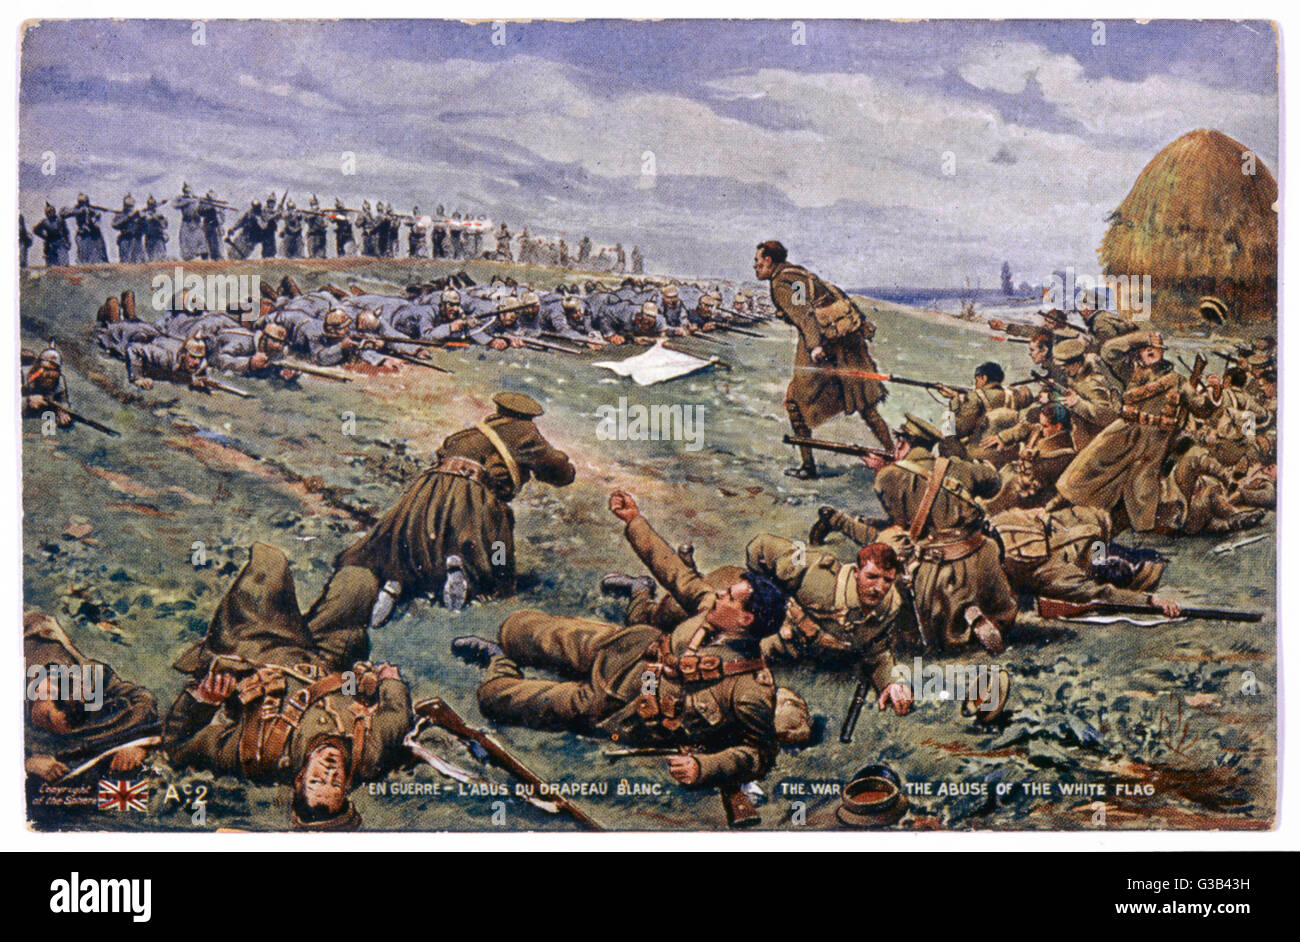 Eine Farbausführung Postkarte Version einer Zeichnung von Fortunino Matania, The Sphere, 2. Januar 1915 erschien. Es zeigt einen Vorfall erzählt der Künstler als eine Kraft der deutschen Infanterie nur vorgetäuscht um zu ergeben, eine weiße Fahne hochhalten, aber dann in einen Hinterhalt gelockt Stockfoto